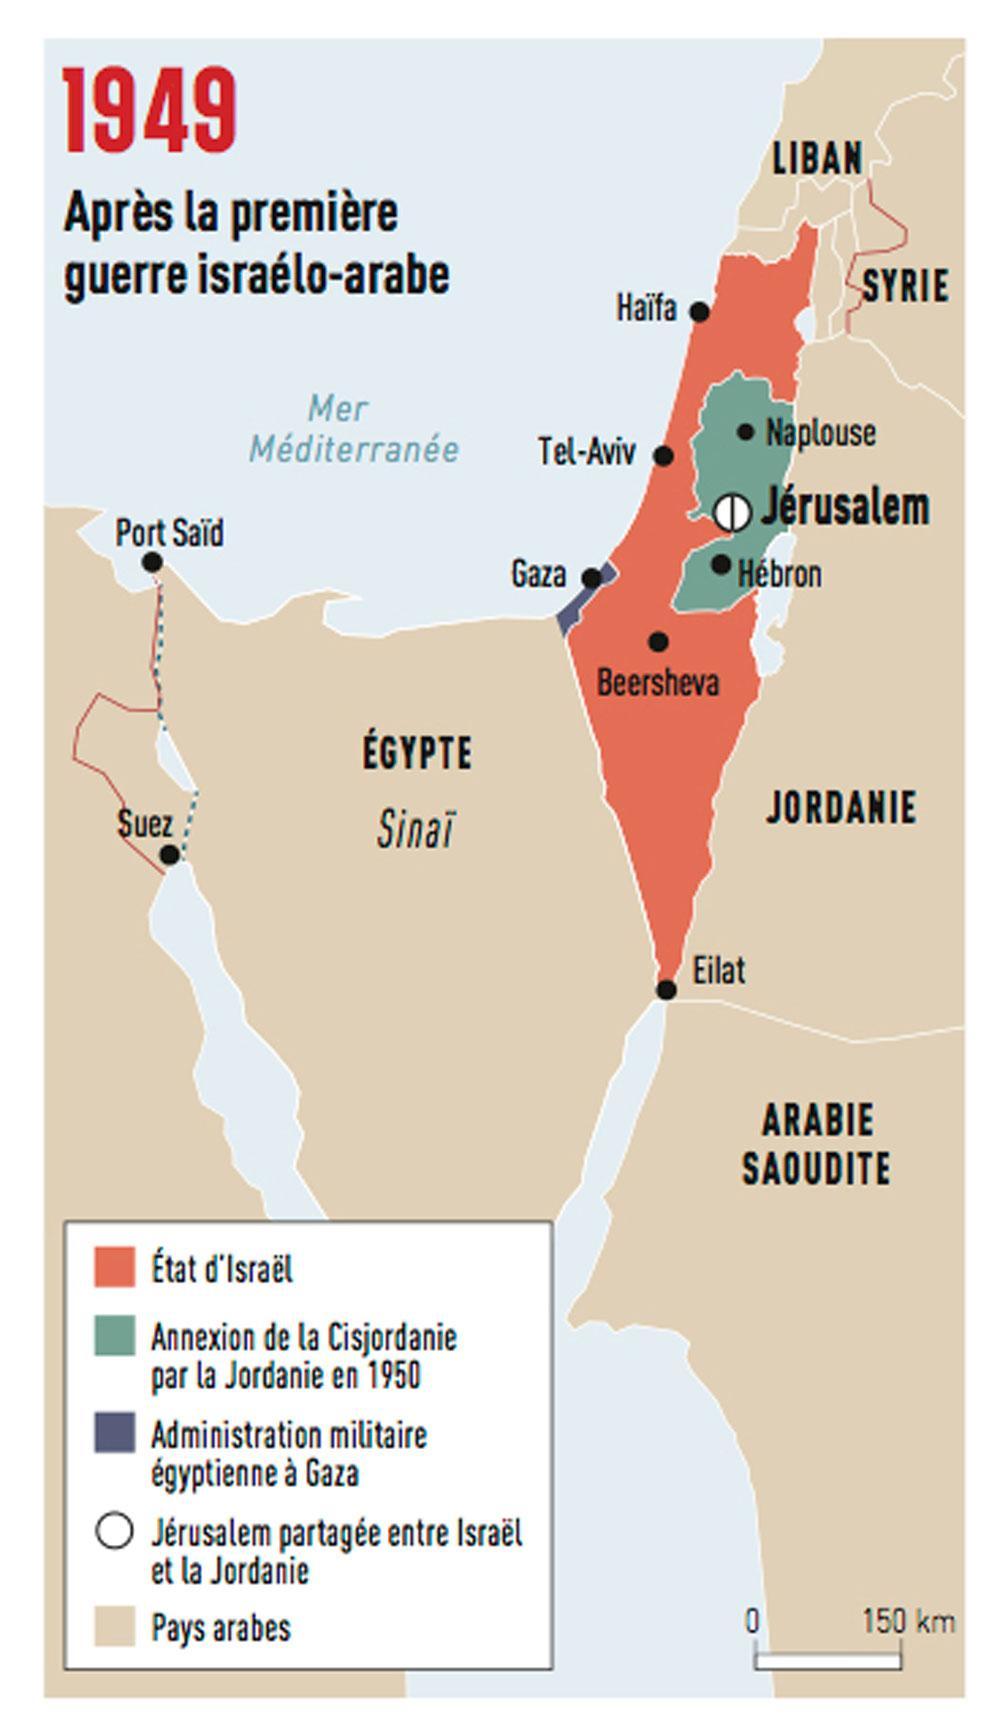 Déclenchée le 15 mai 1948, l'offensive conjointe de l'Egypte, l'Irak, la Jordanie, le Liban et la Syrie oblige Israël à affronter, pour la première fois, des armées régulières, et non plus des civils ou des milices. Un cessez-lefeu définitif avec l'Egypte est signé le 5 janvier 1949 et, trois mois plus tard, les deux pays concluent un accord d'armistice. A l'issue de cette guerre, Israël a gagné un tiers de territoire en plus par rapport à la résolution de l'ONU. Quant à Jérusalem, elle se trouve partagée entre Israël et la Jordanie.